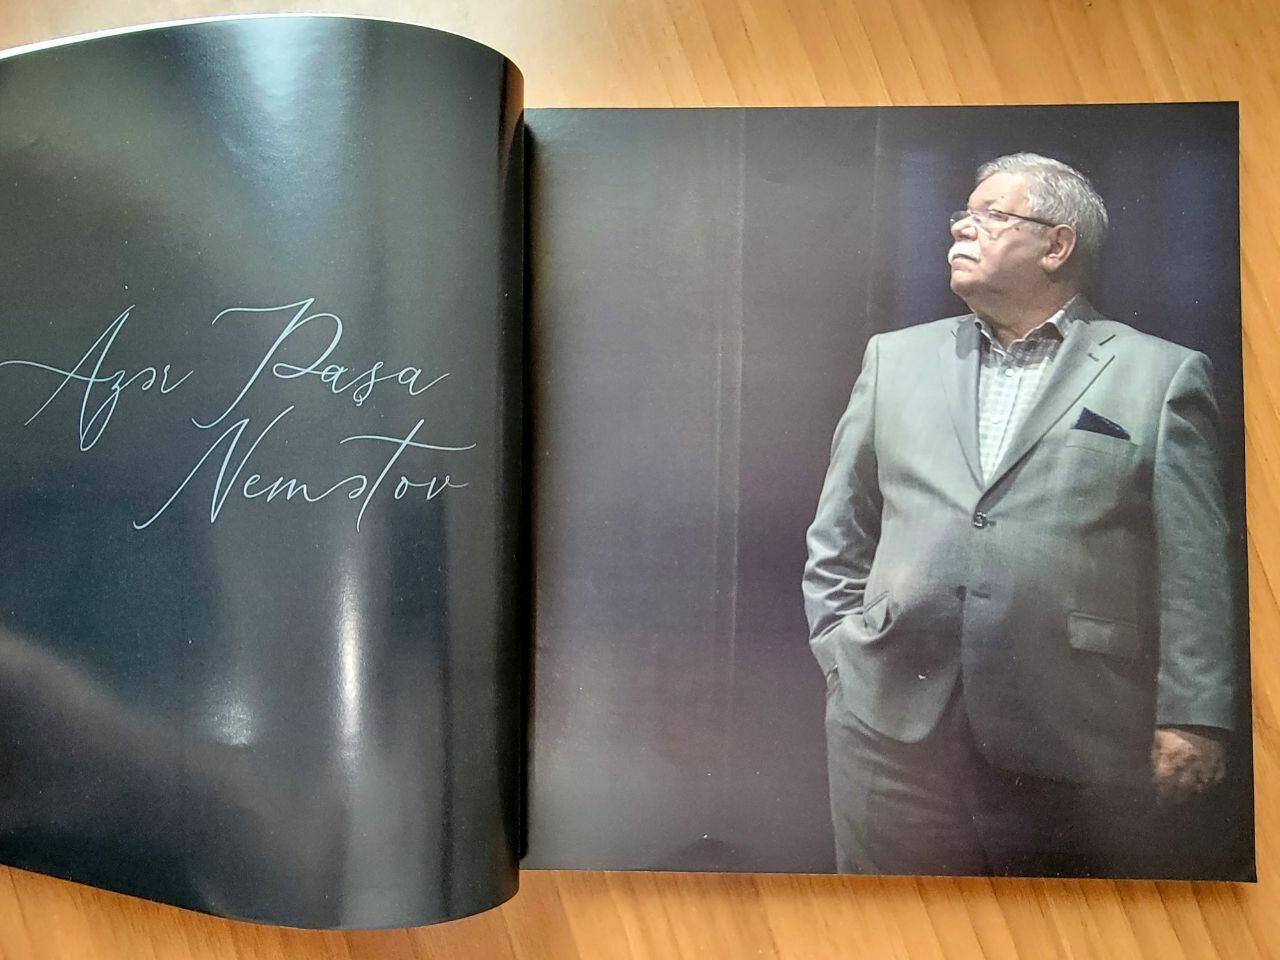 Издана книга-альбом, посвященная Азер Паше Нематову